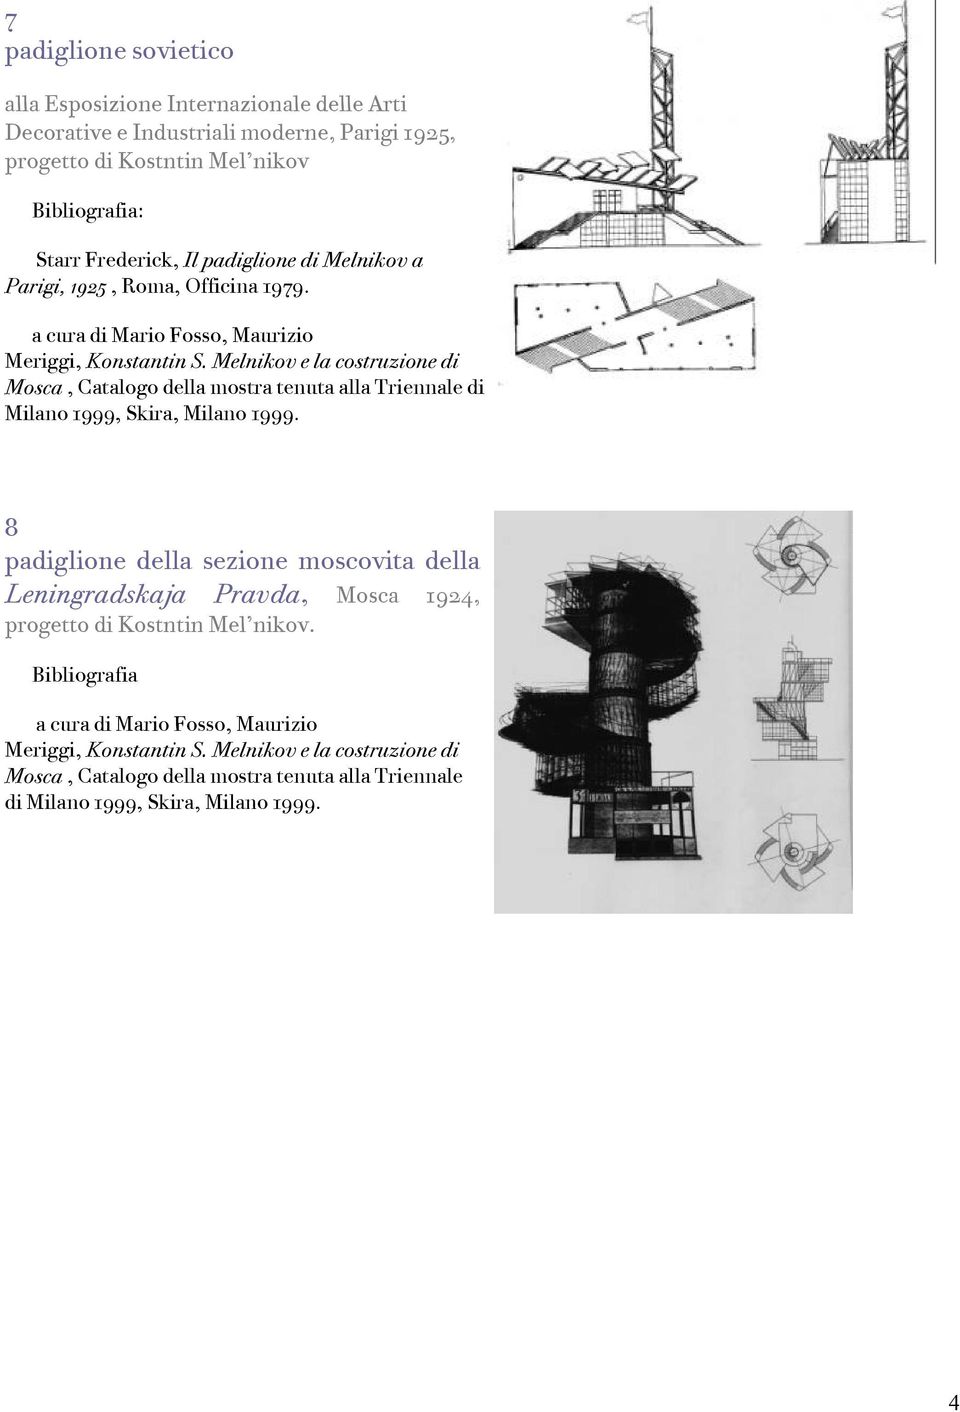 Melnikov e la costruzione di Mosca, Catalogo della mostra tenuta alla Triennale di Milano 1999, Skira, Milano 1999.